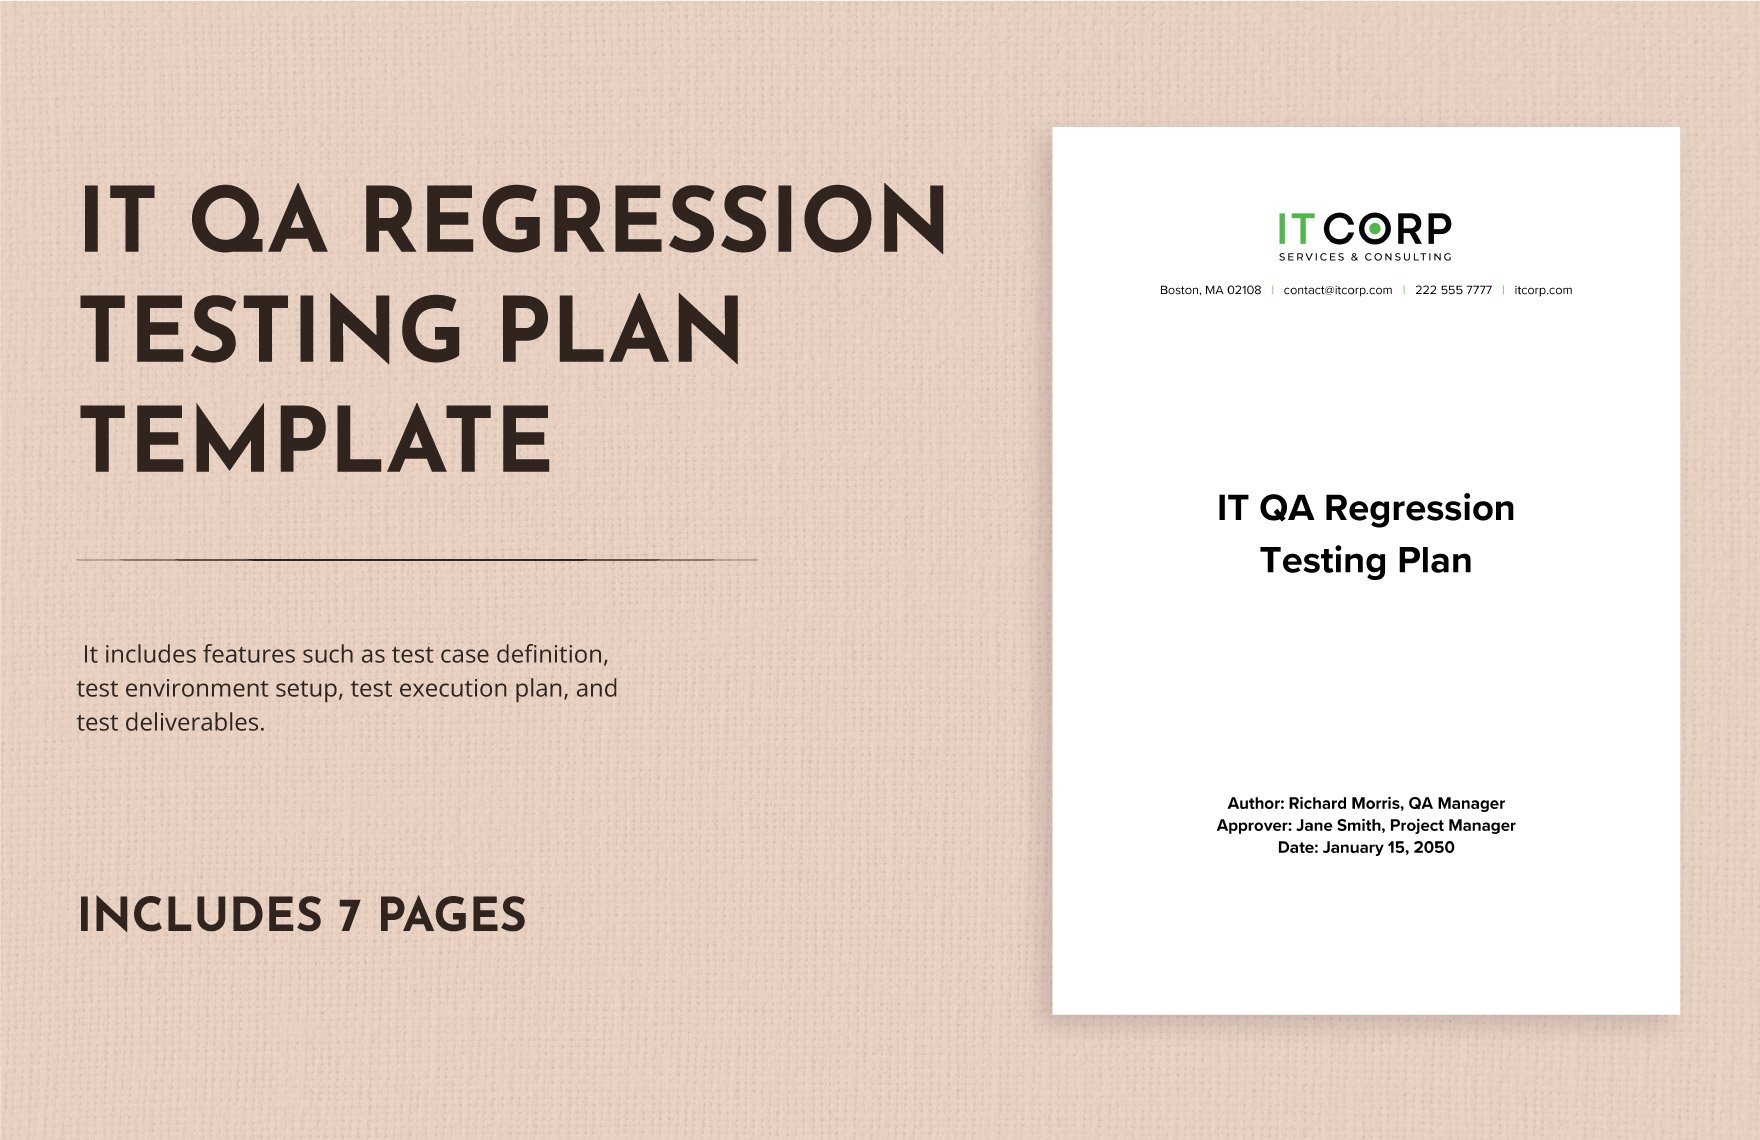 IT QA Regression Testing Plan Template in Word, Google Docs, PDF